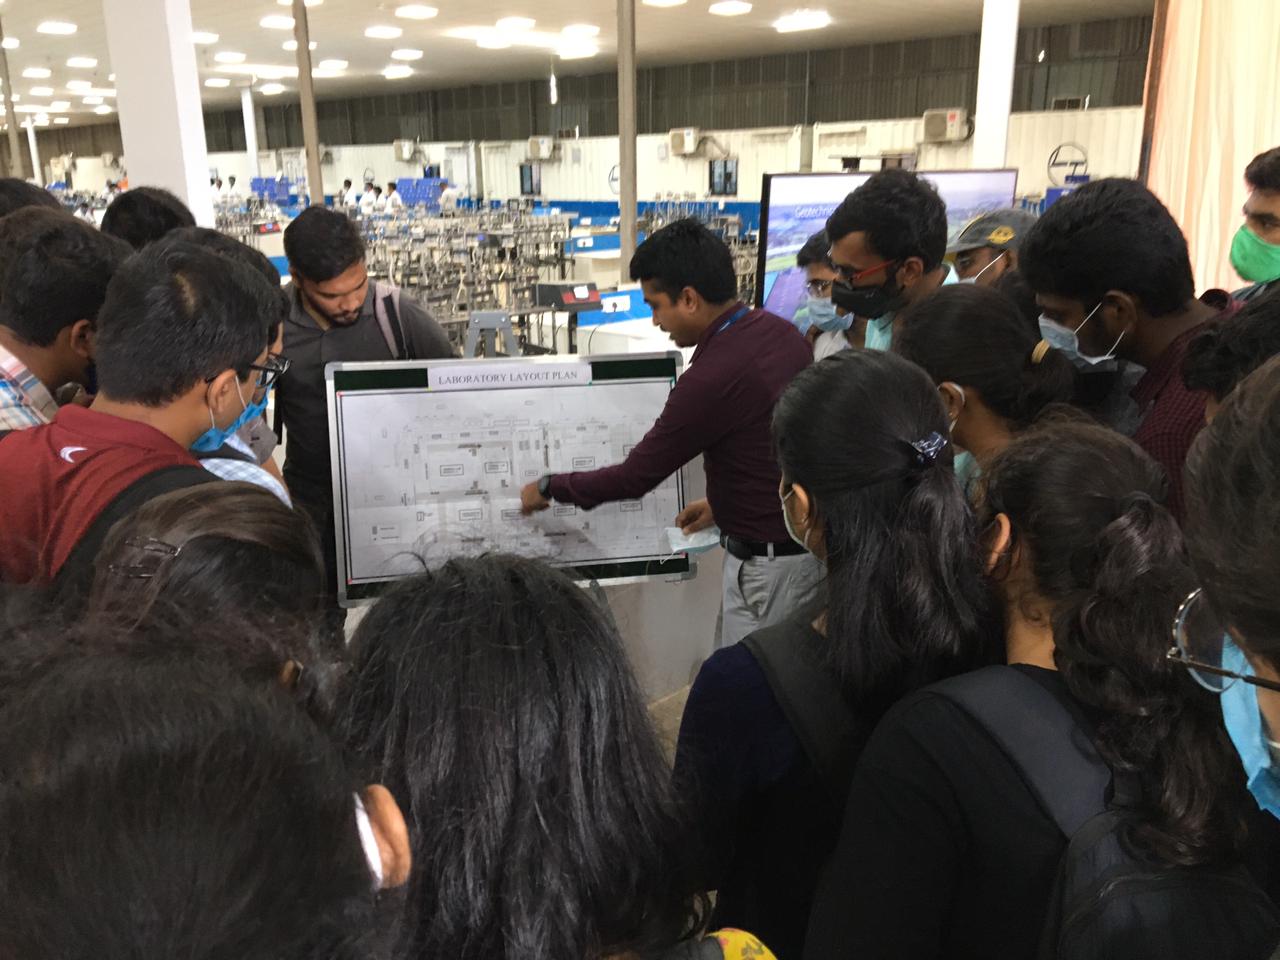 सूरत स्थित एशिया के सबसे बड़े भू– तकनीकी प्रयोगशाला में सरदार वल्लभ भाई राष्ट्रीय प्रौद्योगिकी संस्थान (एसवीएनआईटी/ SVNIT) के छात्र प्रशिक्षण सत्र में भाग लेते हुए।